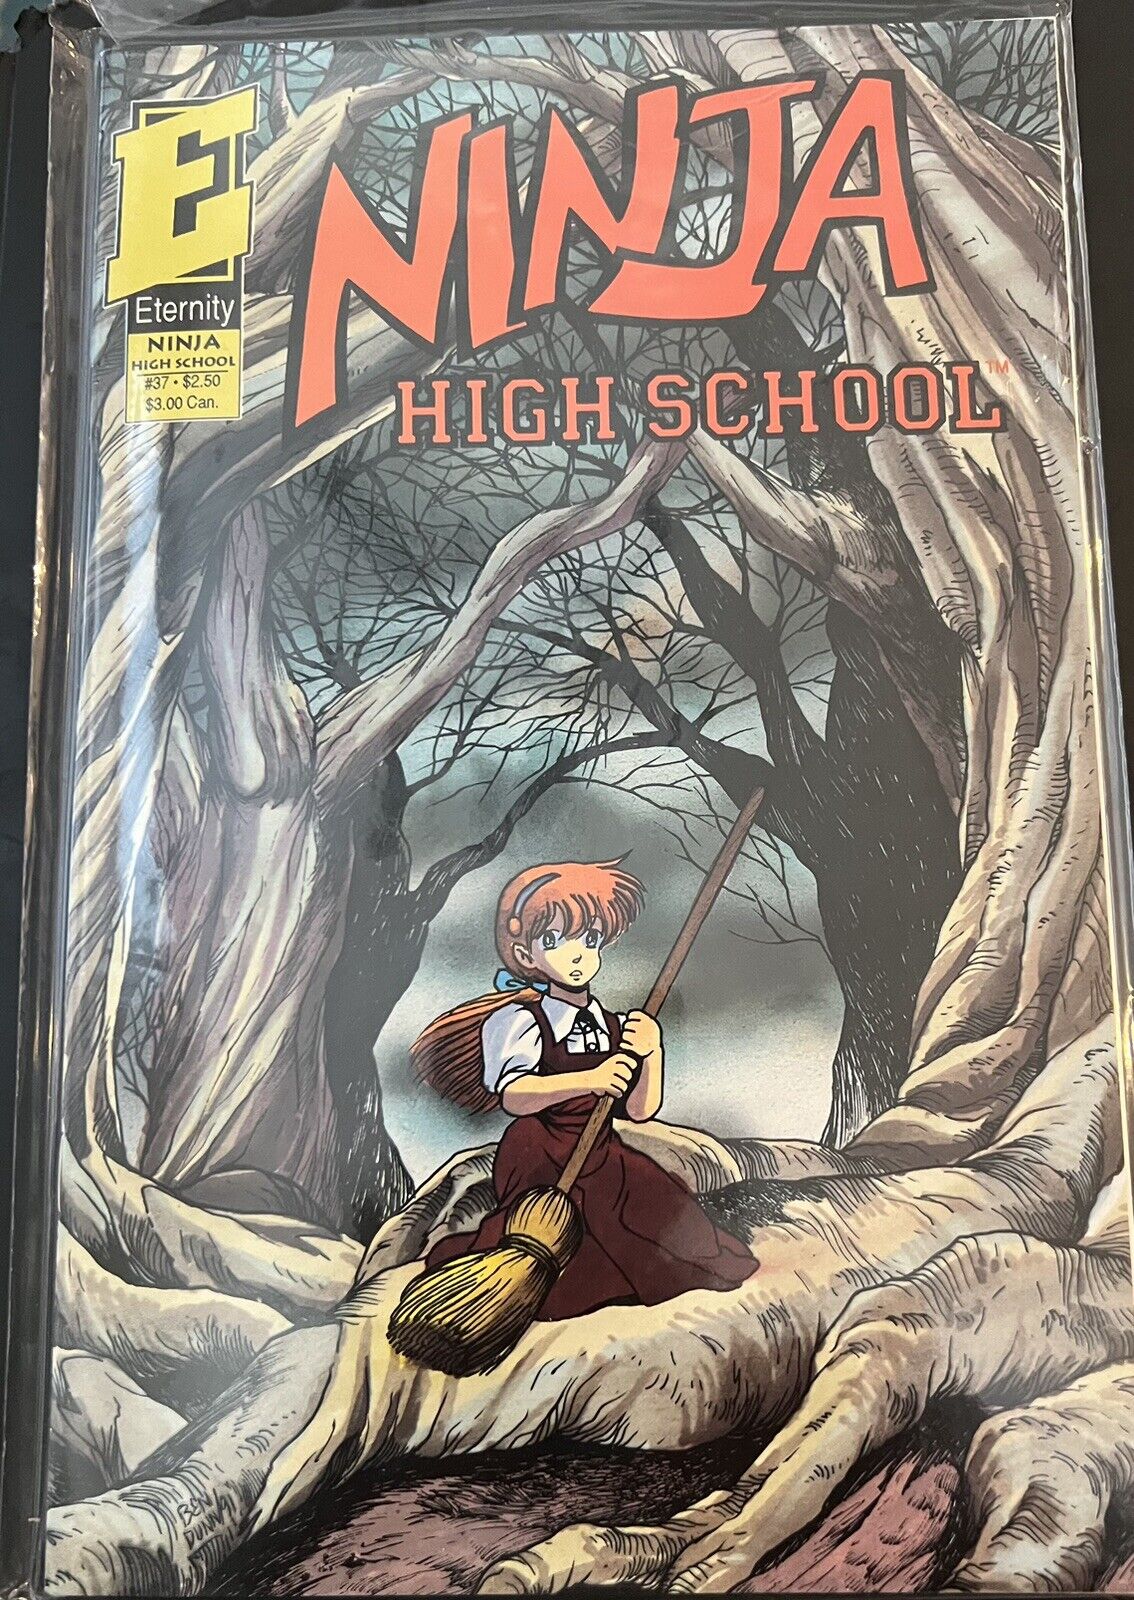 NINJA HIGH SCHOOL #37-38 COMIC BOOK LOT 1 APP WARRIOR NUN AREALA LILITH NETFLIX